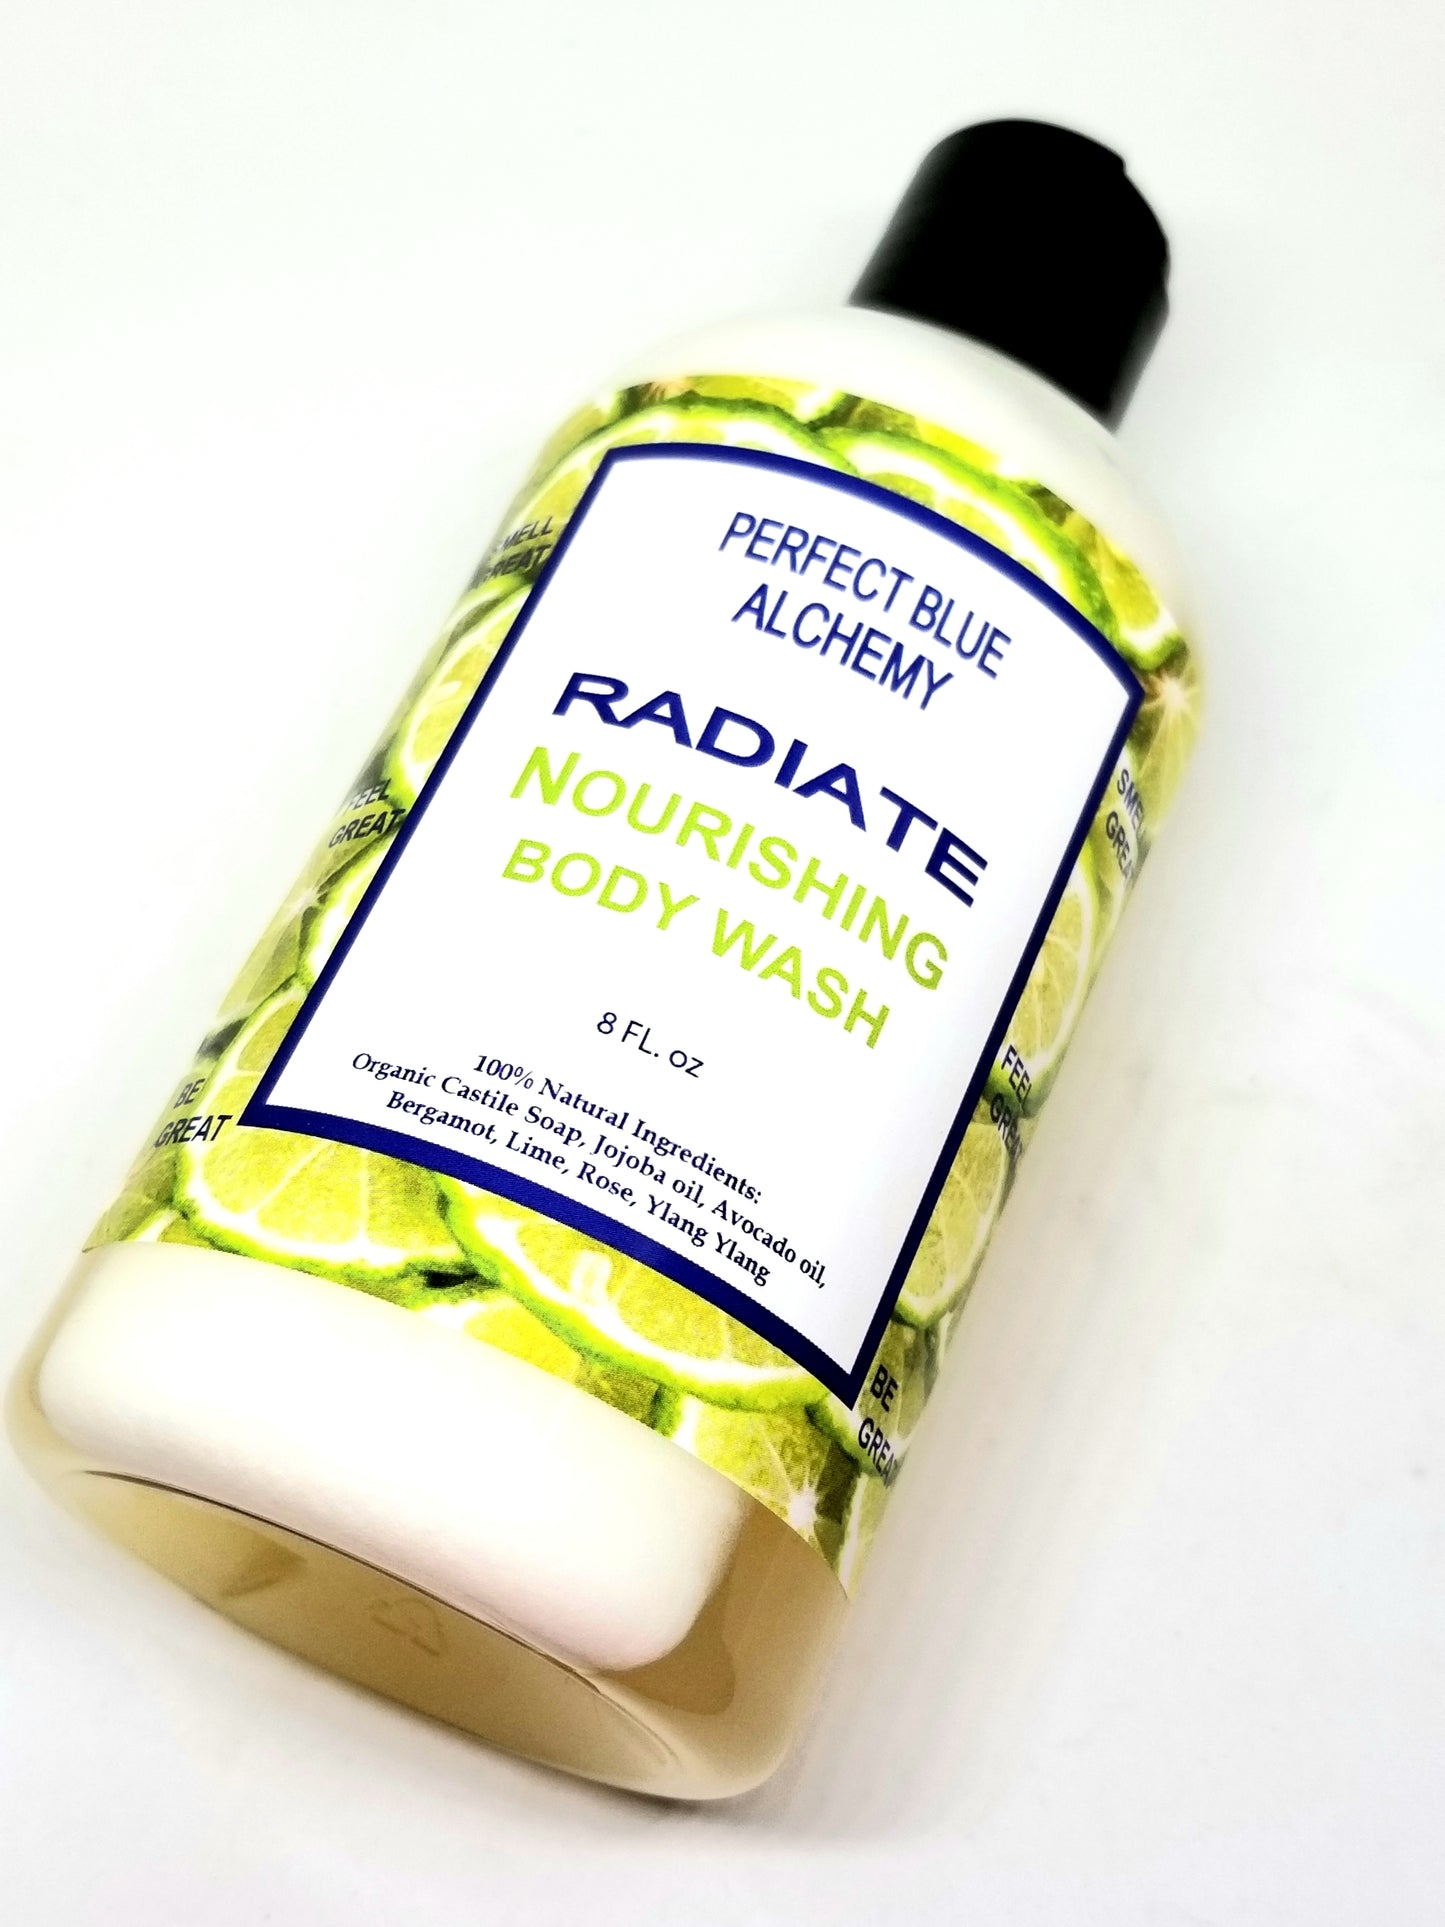 Radiate Nourishing Body Wash